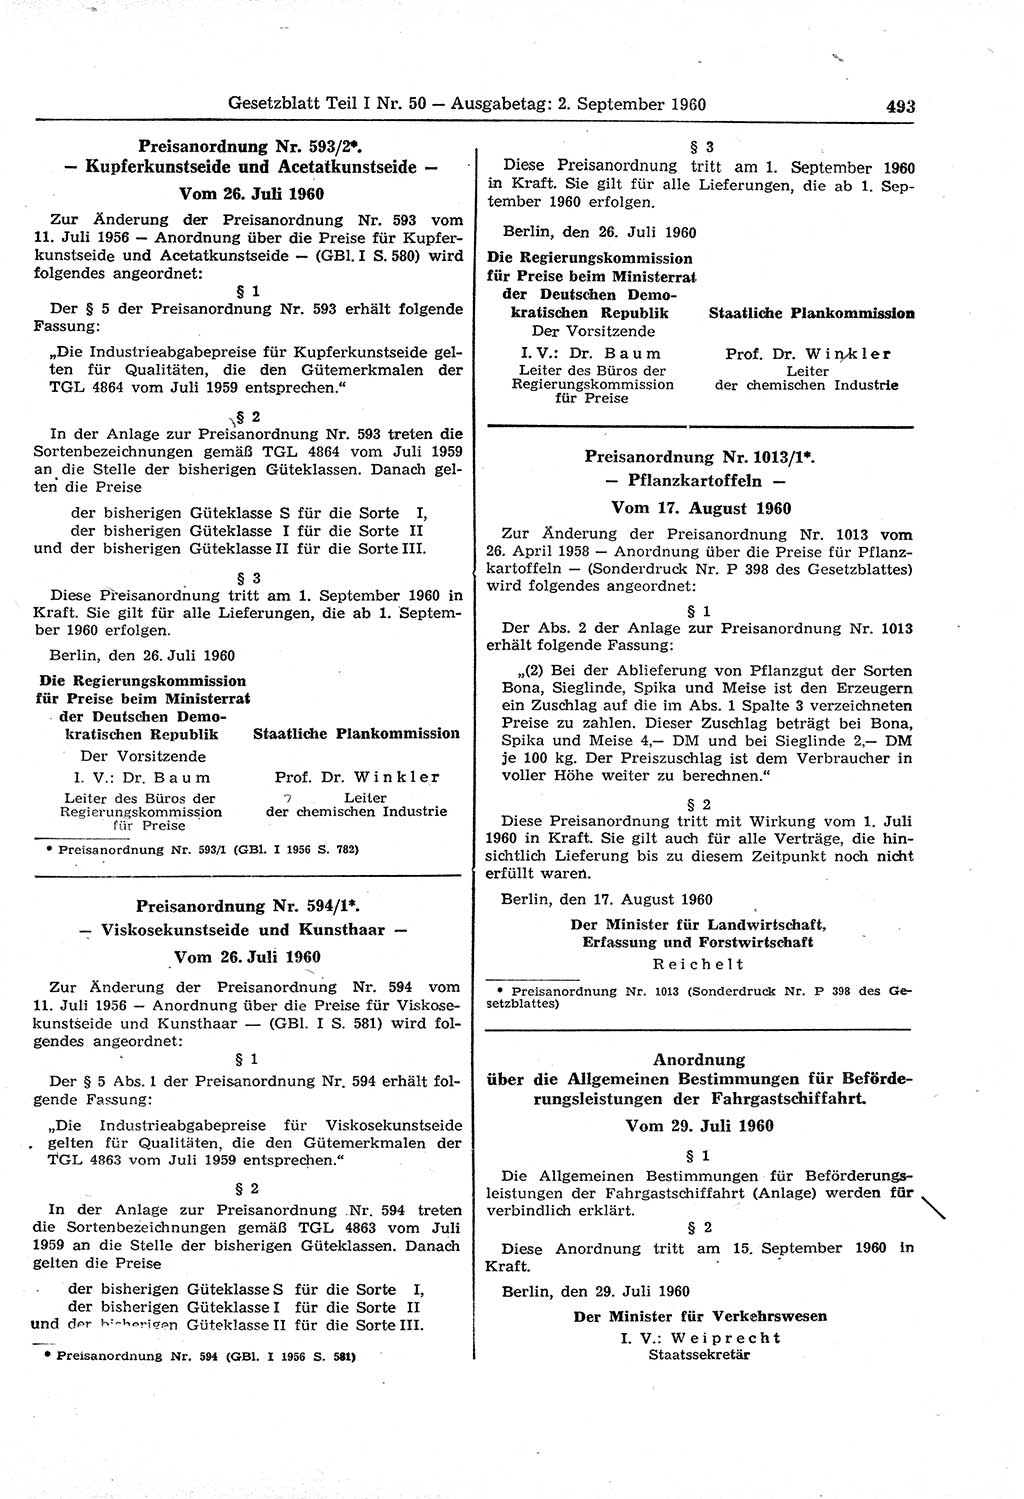 Gesetzblatt (GBl.) der Deutschen Demokratischen Republik (DDR) Teil Ⅰ 1960, Seite 493 (GBl. DDR Ⅰ 1960, S. 493)